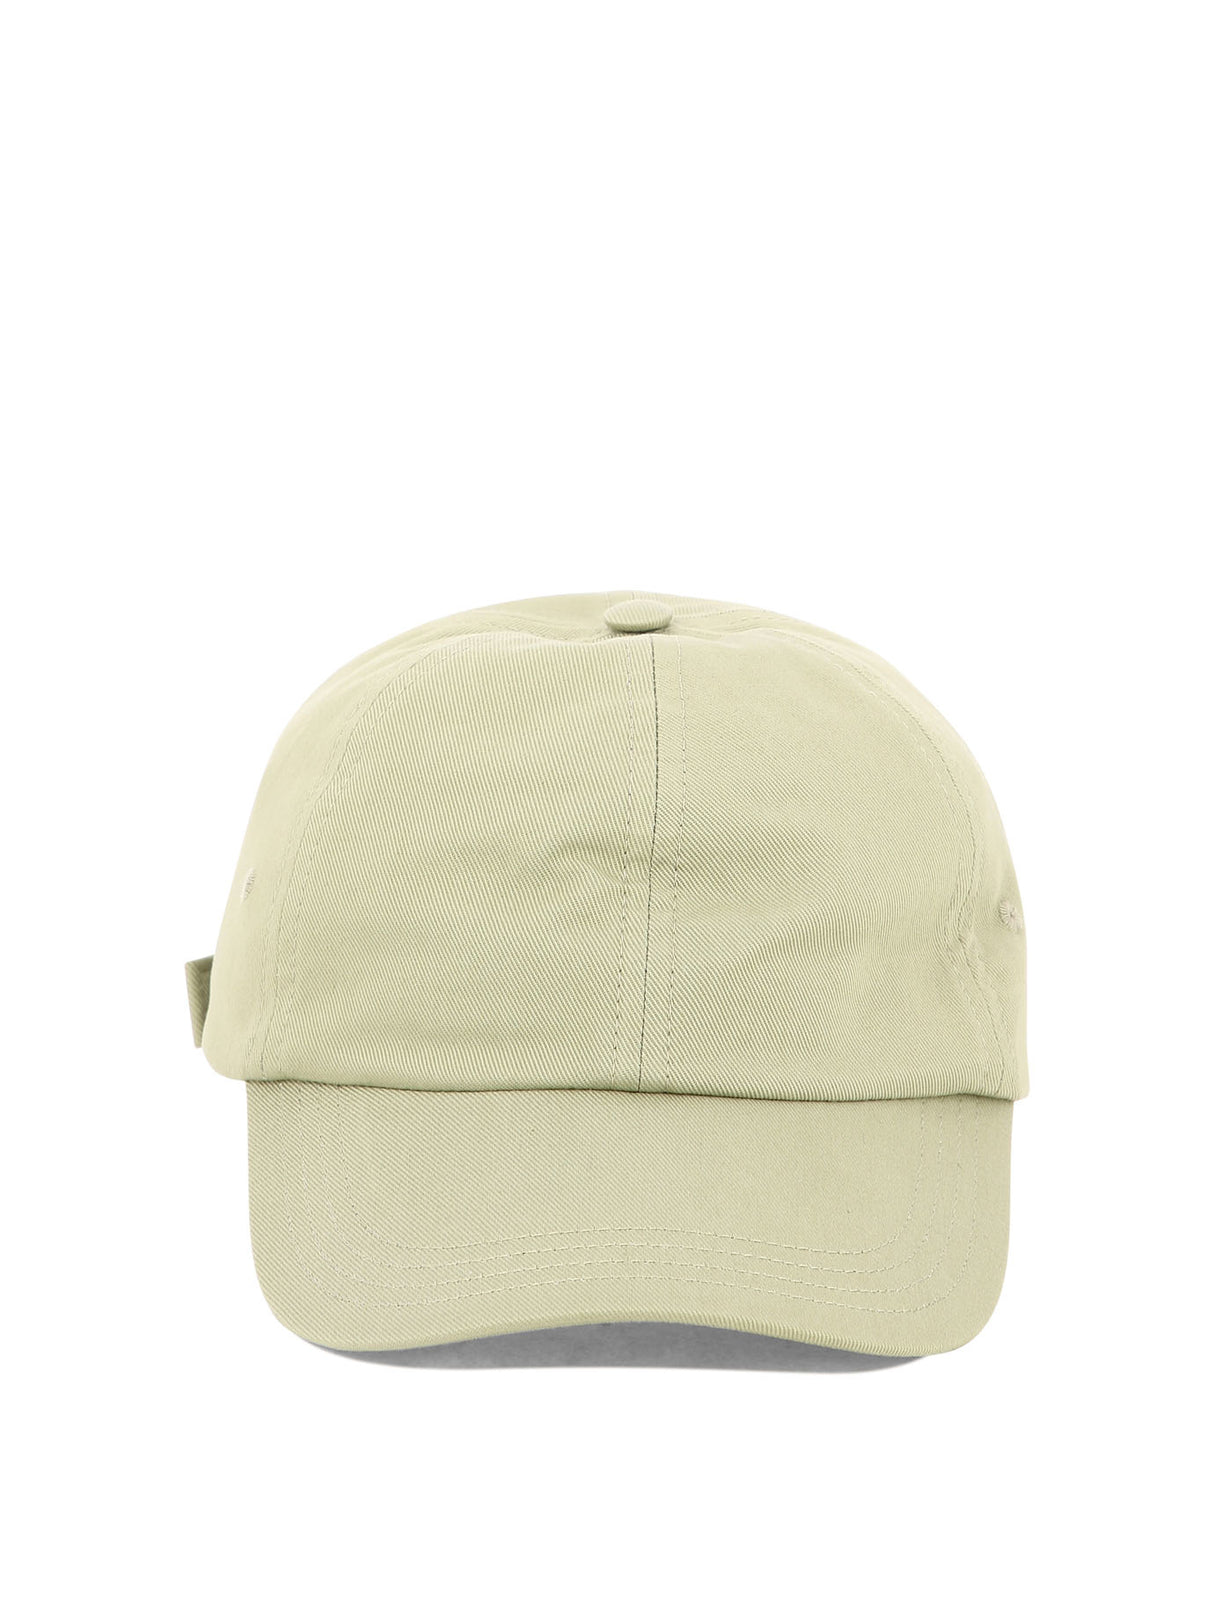 女性用刺繍入りグリーンの野球帽子SS24